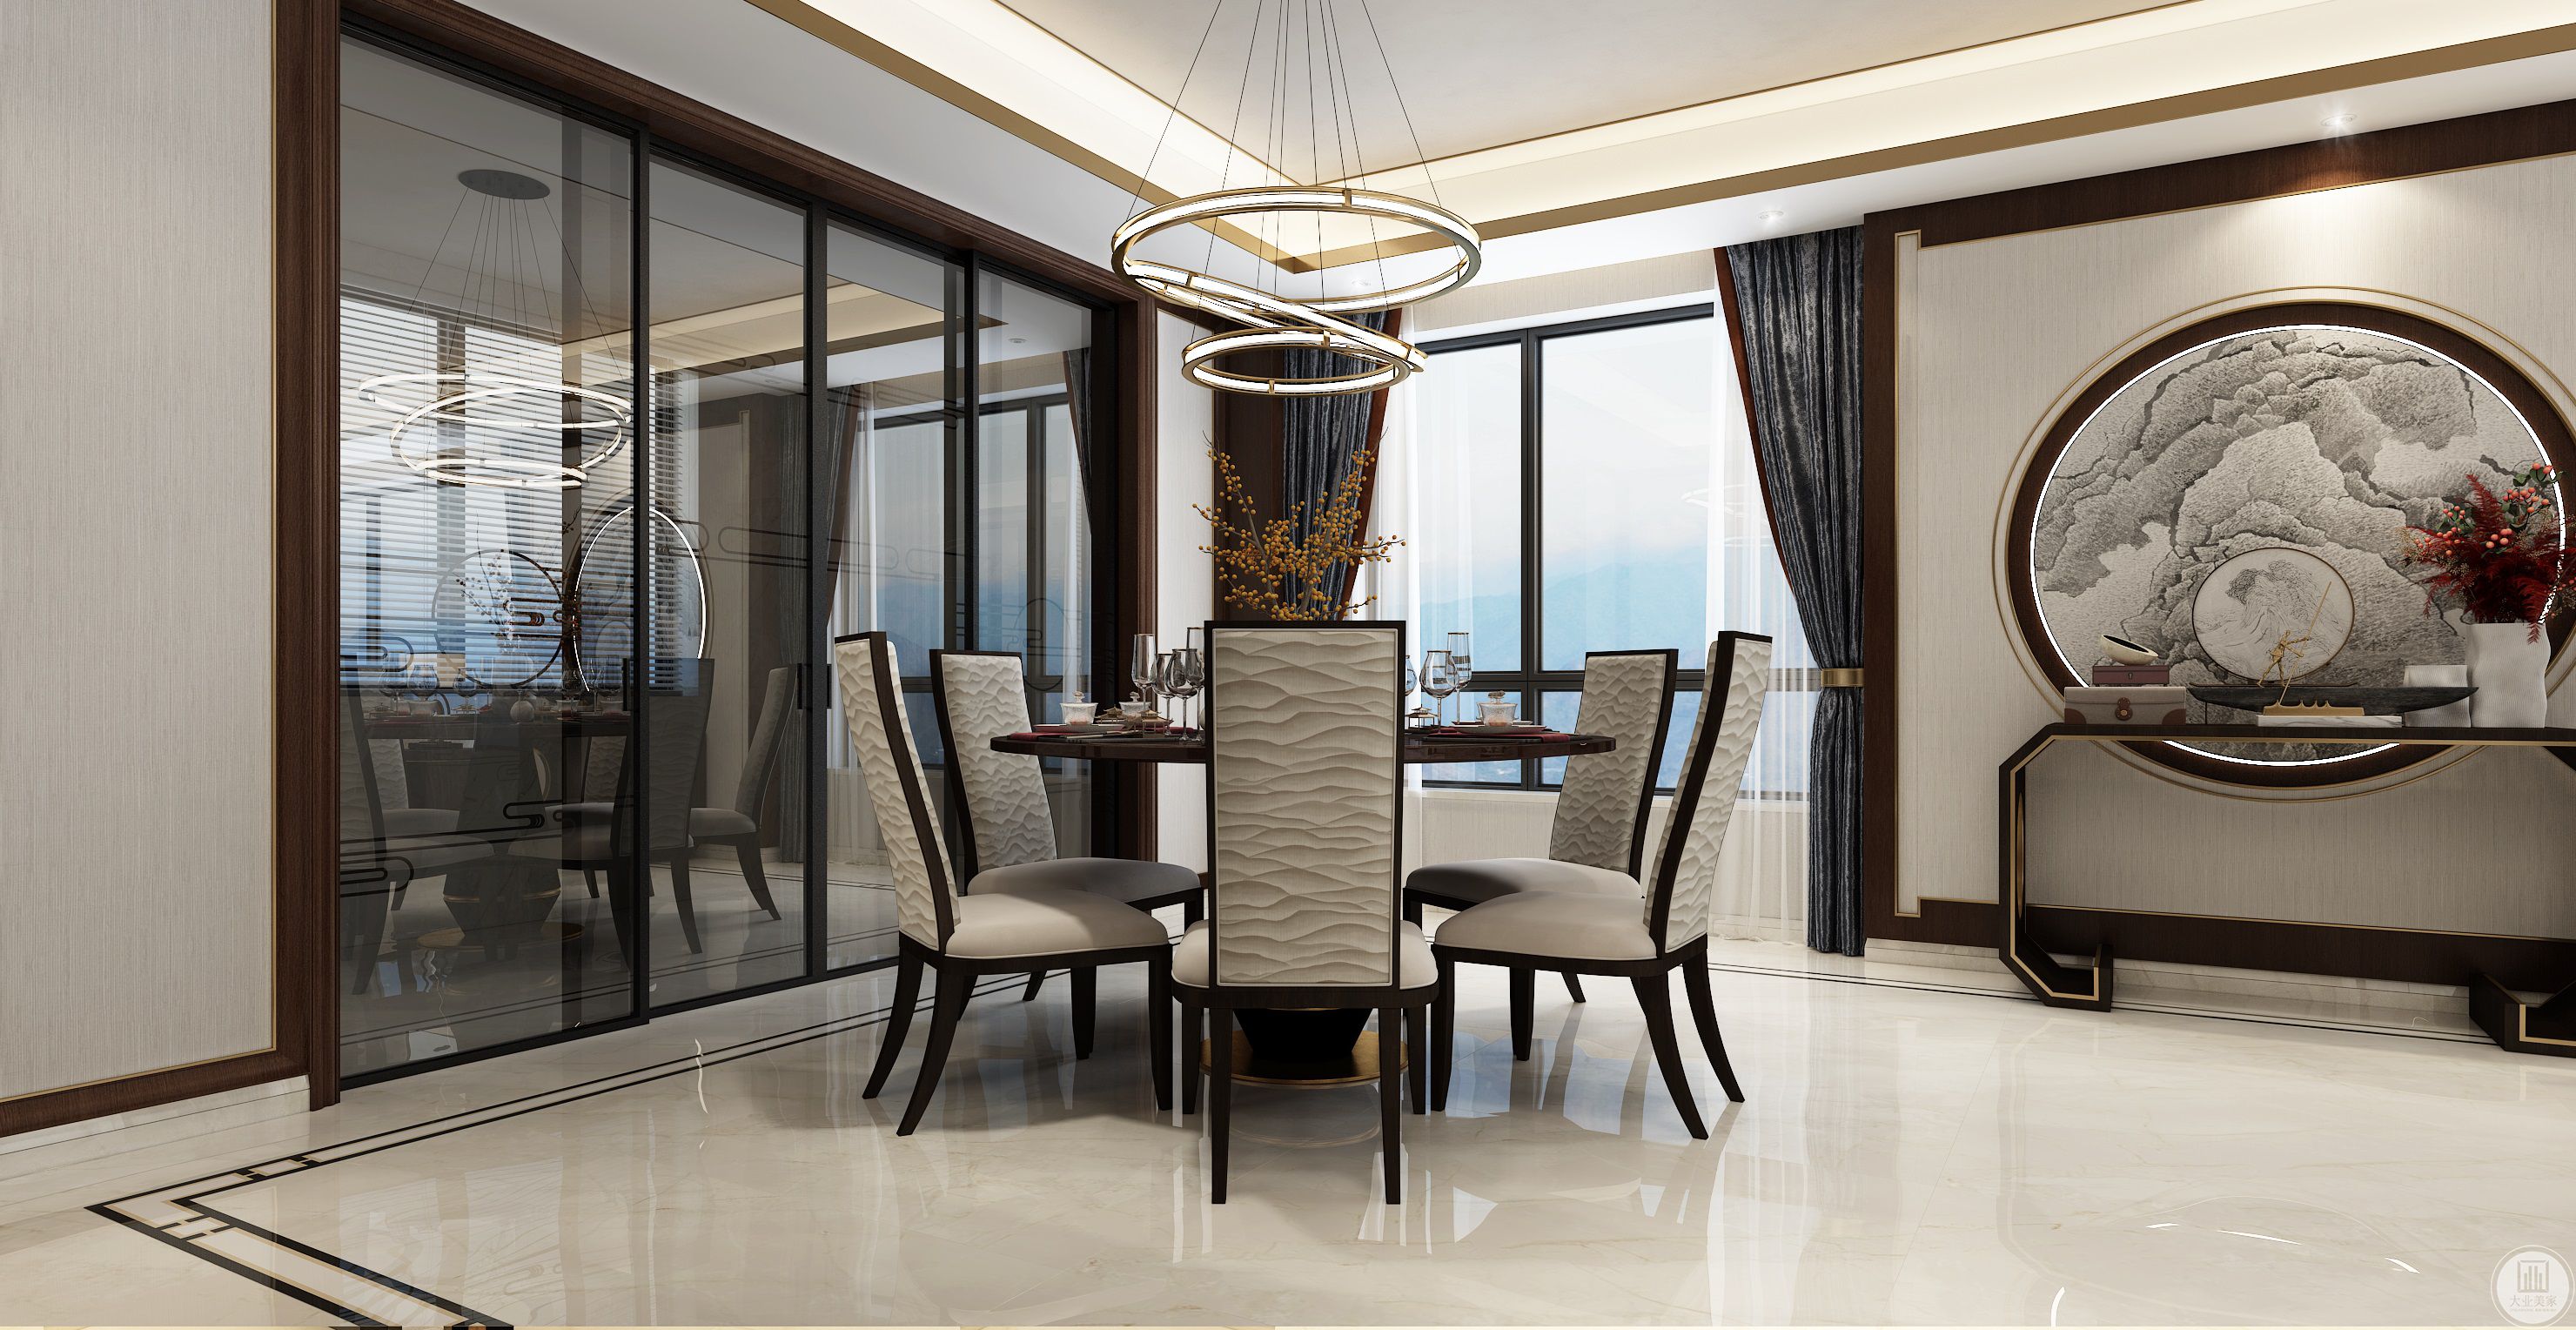 环形吊灯与圆形桌椅，东方的古典与现代的简约恰到好处，空间立体感多一份轻盈与活泼。